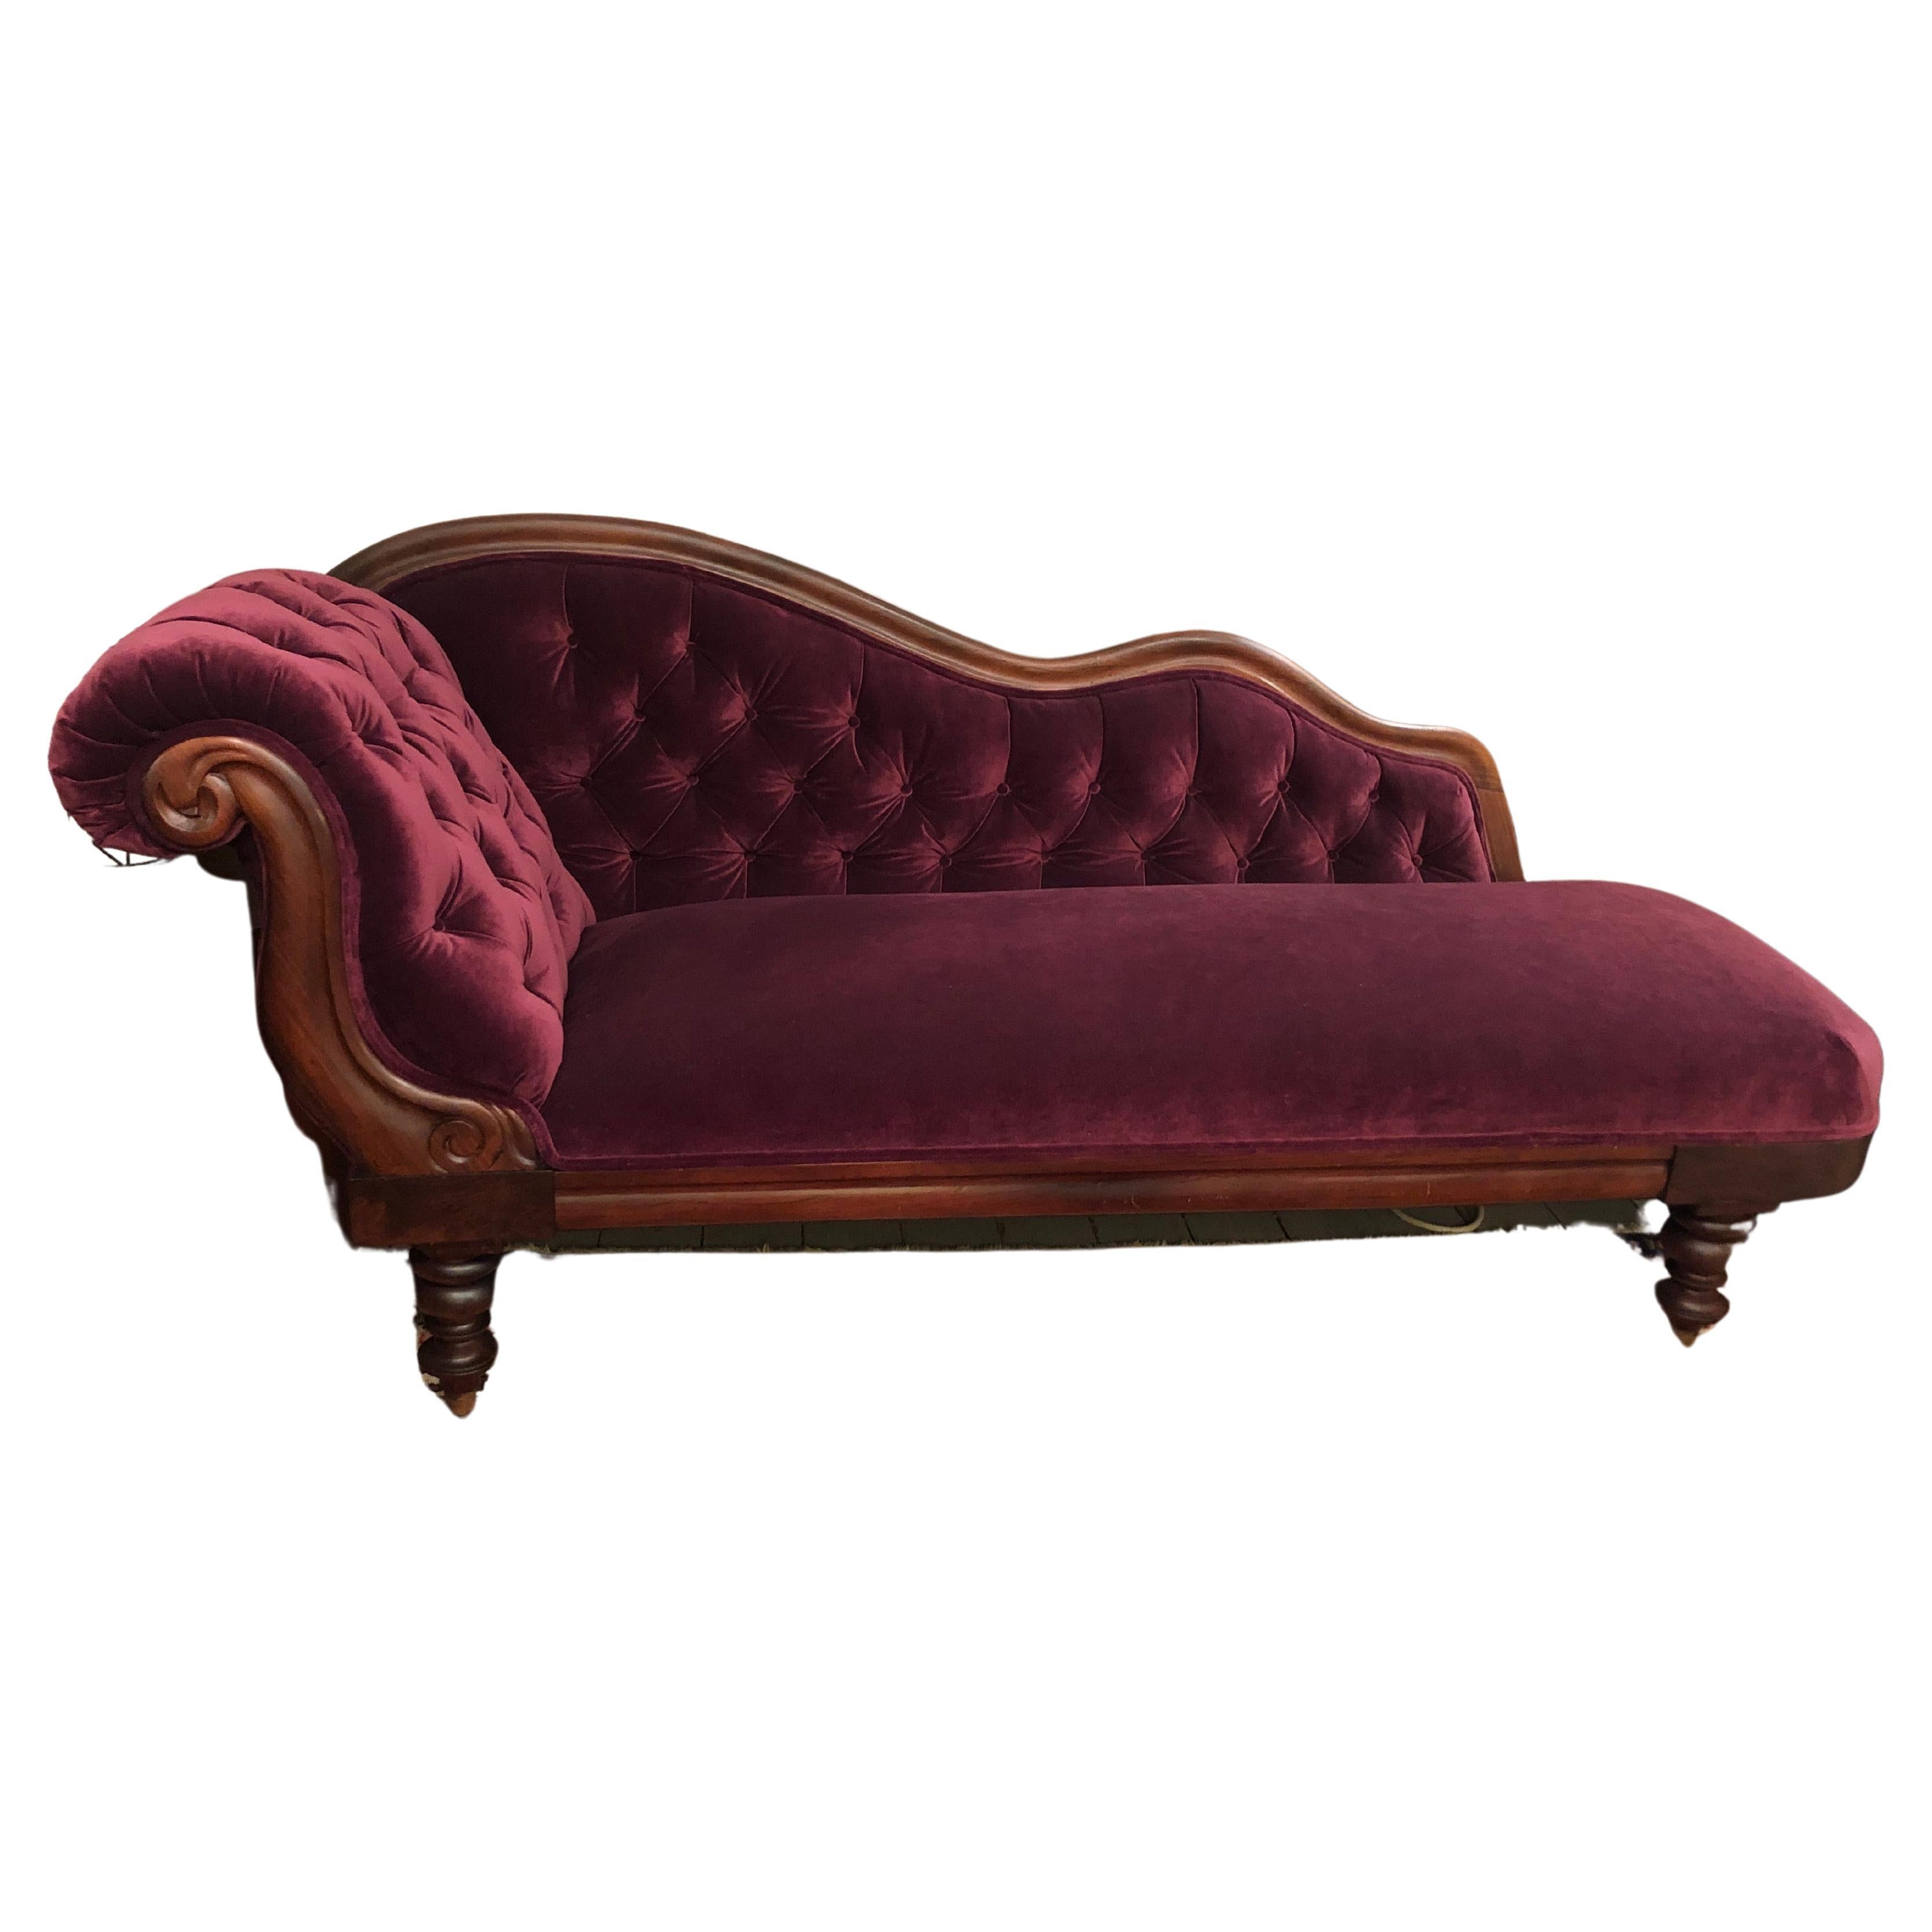 Romantic Antique Purple Velvet Victorian Fainting Couch Chaise Longue